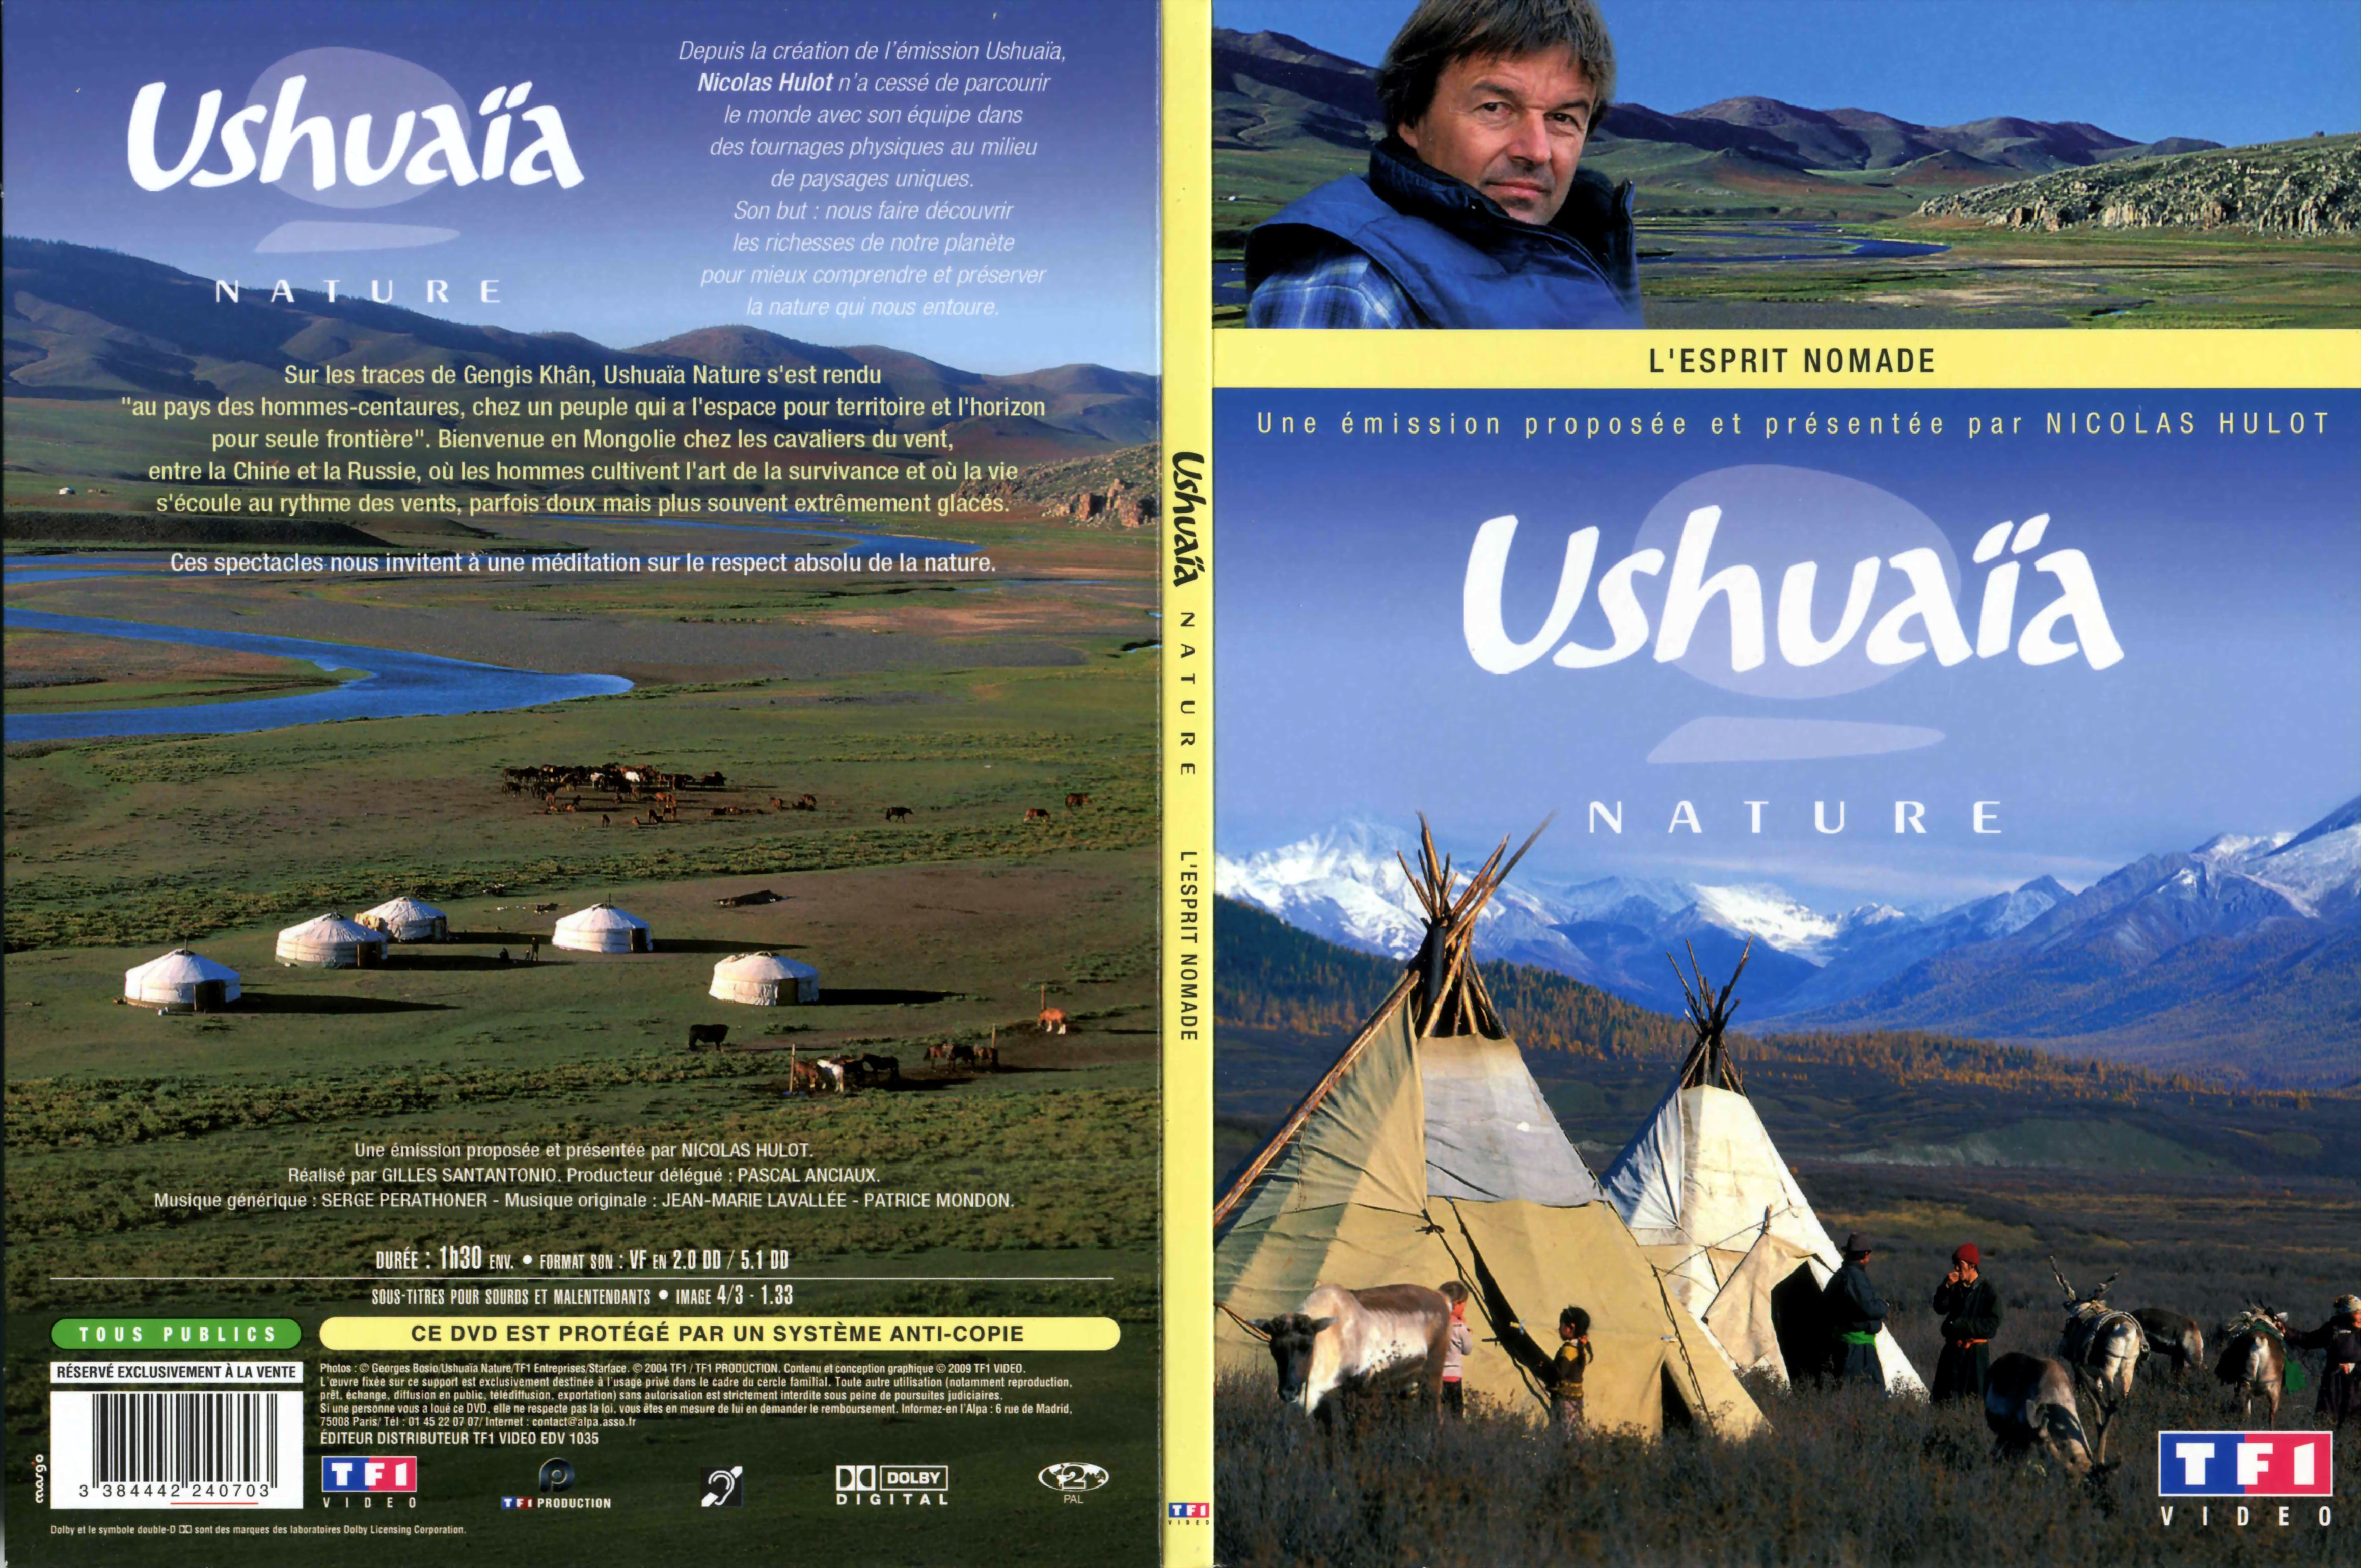 Jaquette DVD Ushuaia Nature - L